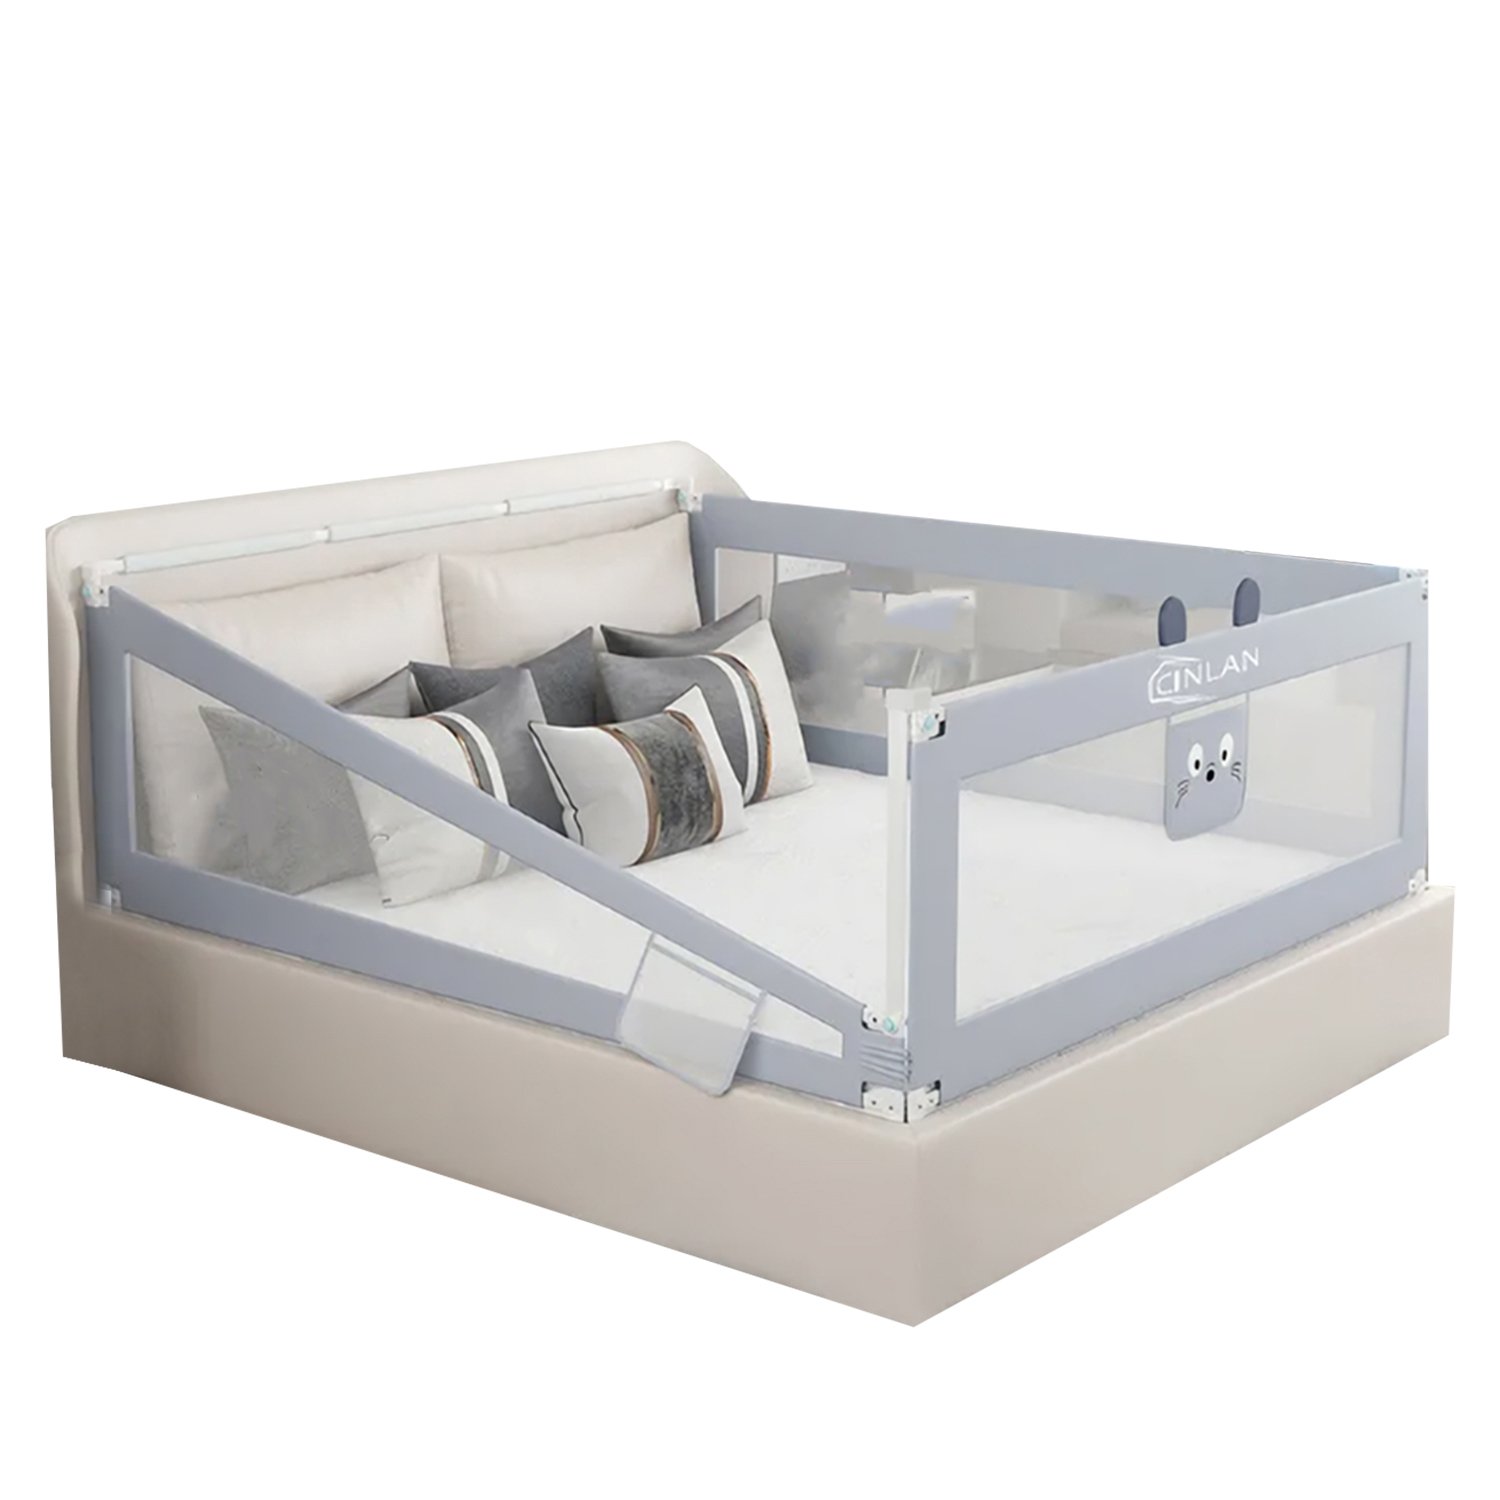  защитный CINLANKIDS для кровати 160х66 см:  по цене 2295 .